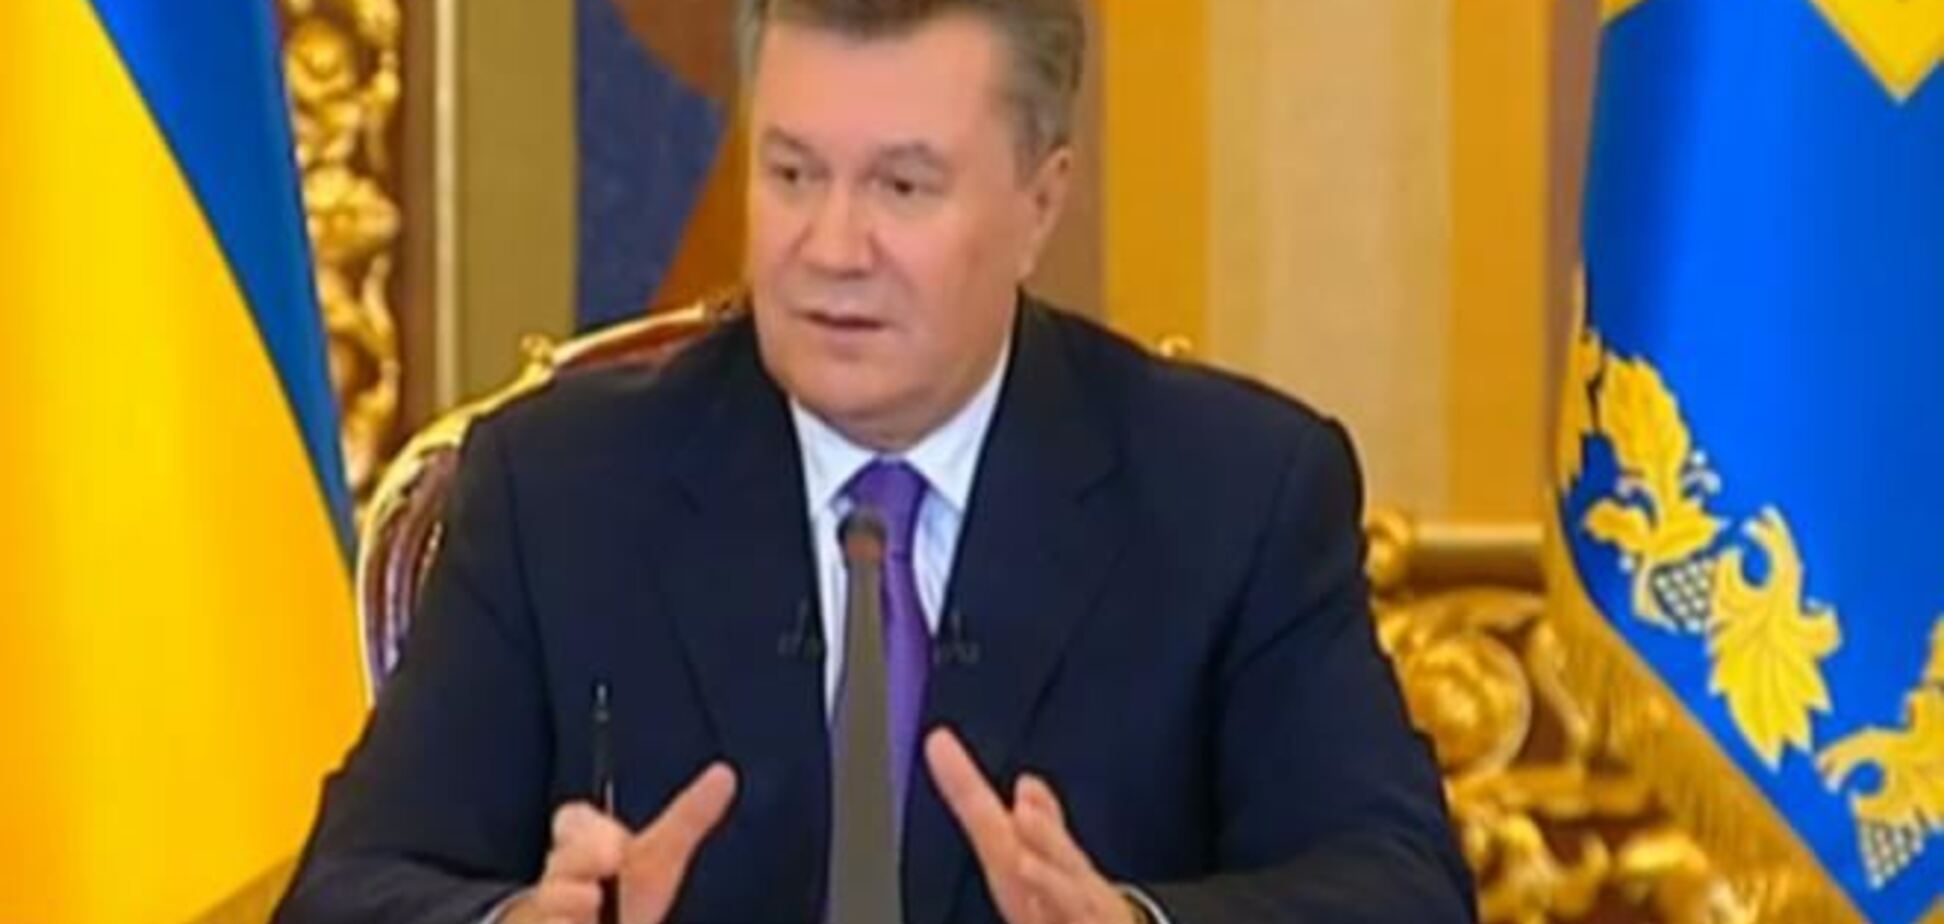 Експерт: Янукович в порівнянні з Путіним буде виглядати гірше